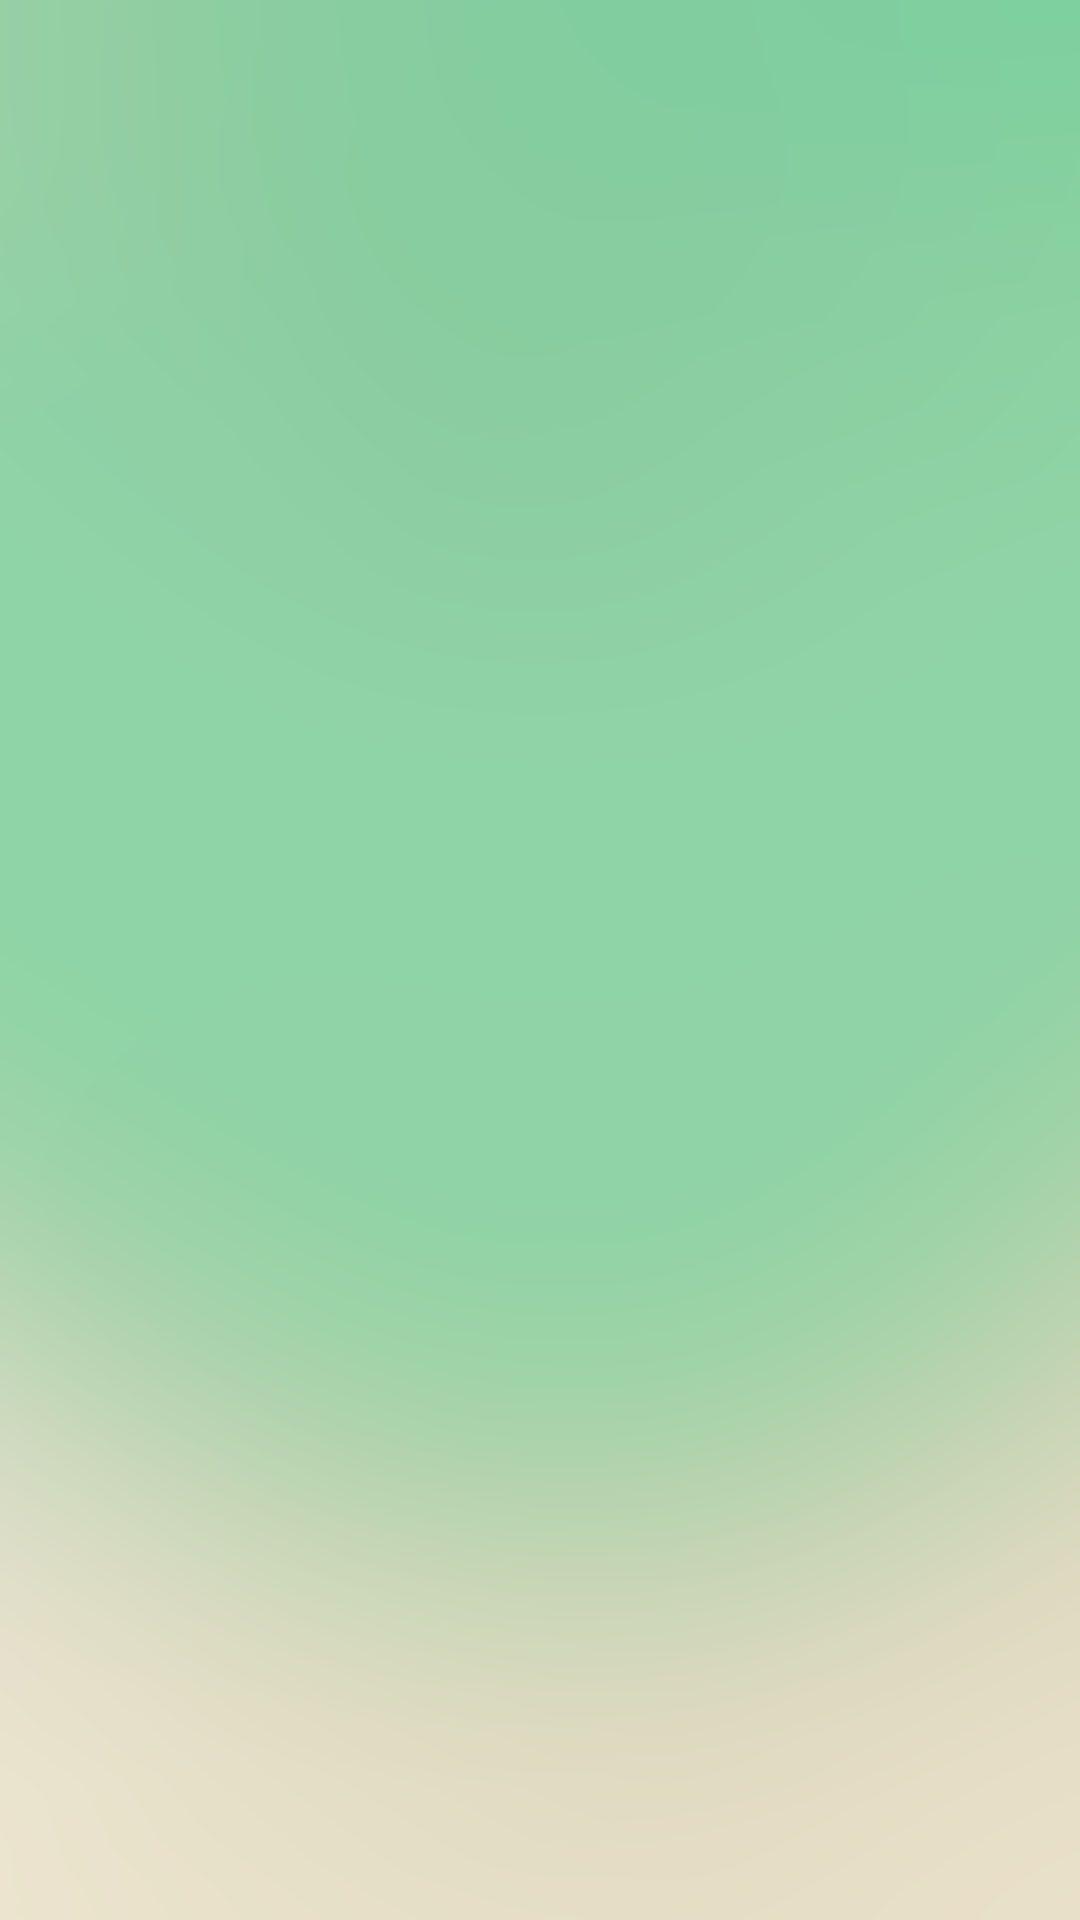 Tải xuống miễn phí 1080x1920 Green Turquoise Gradient Hình nền Android